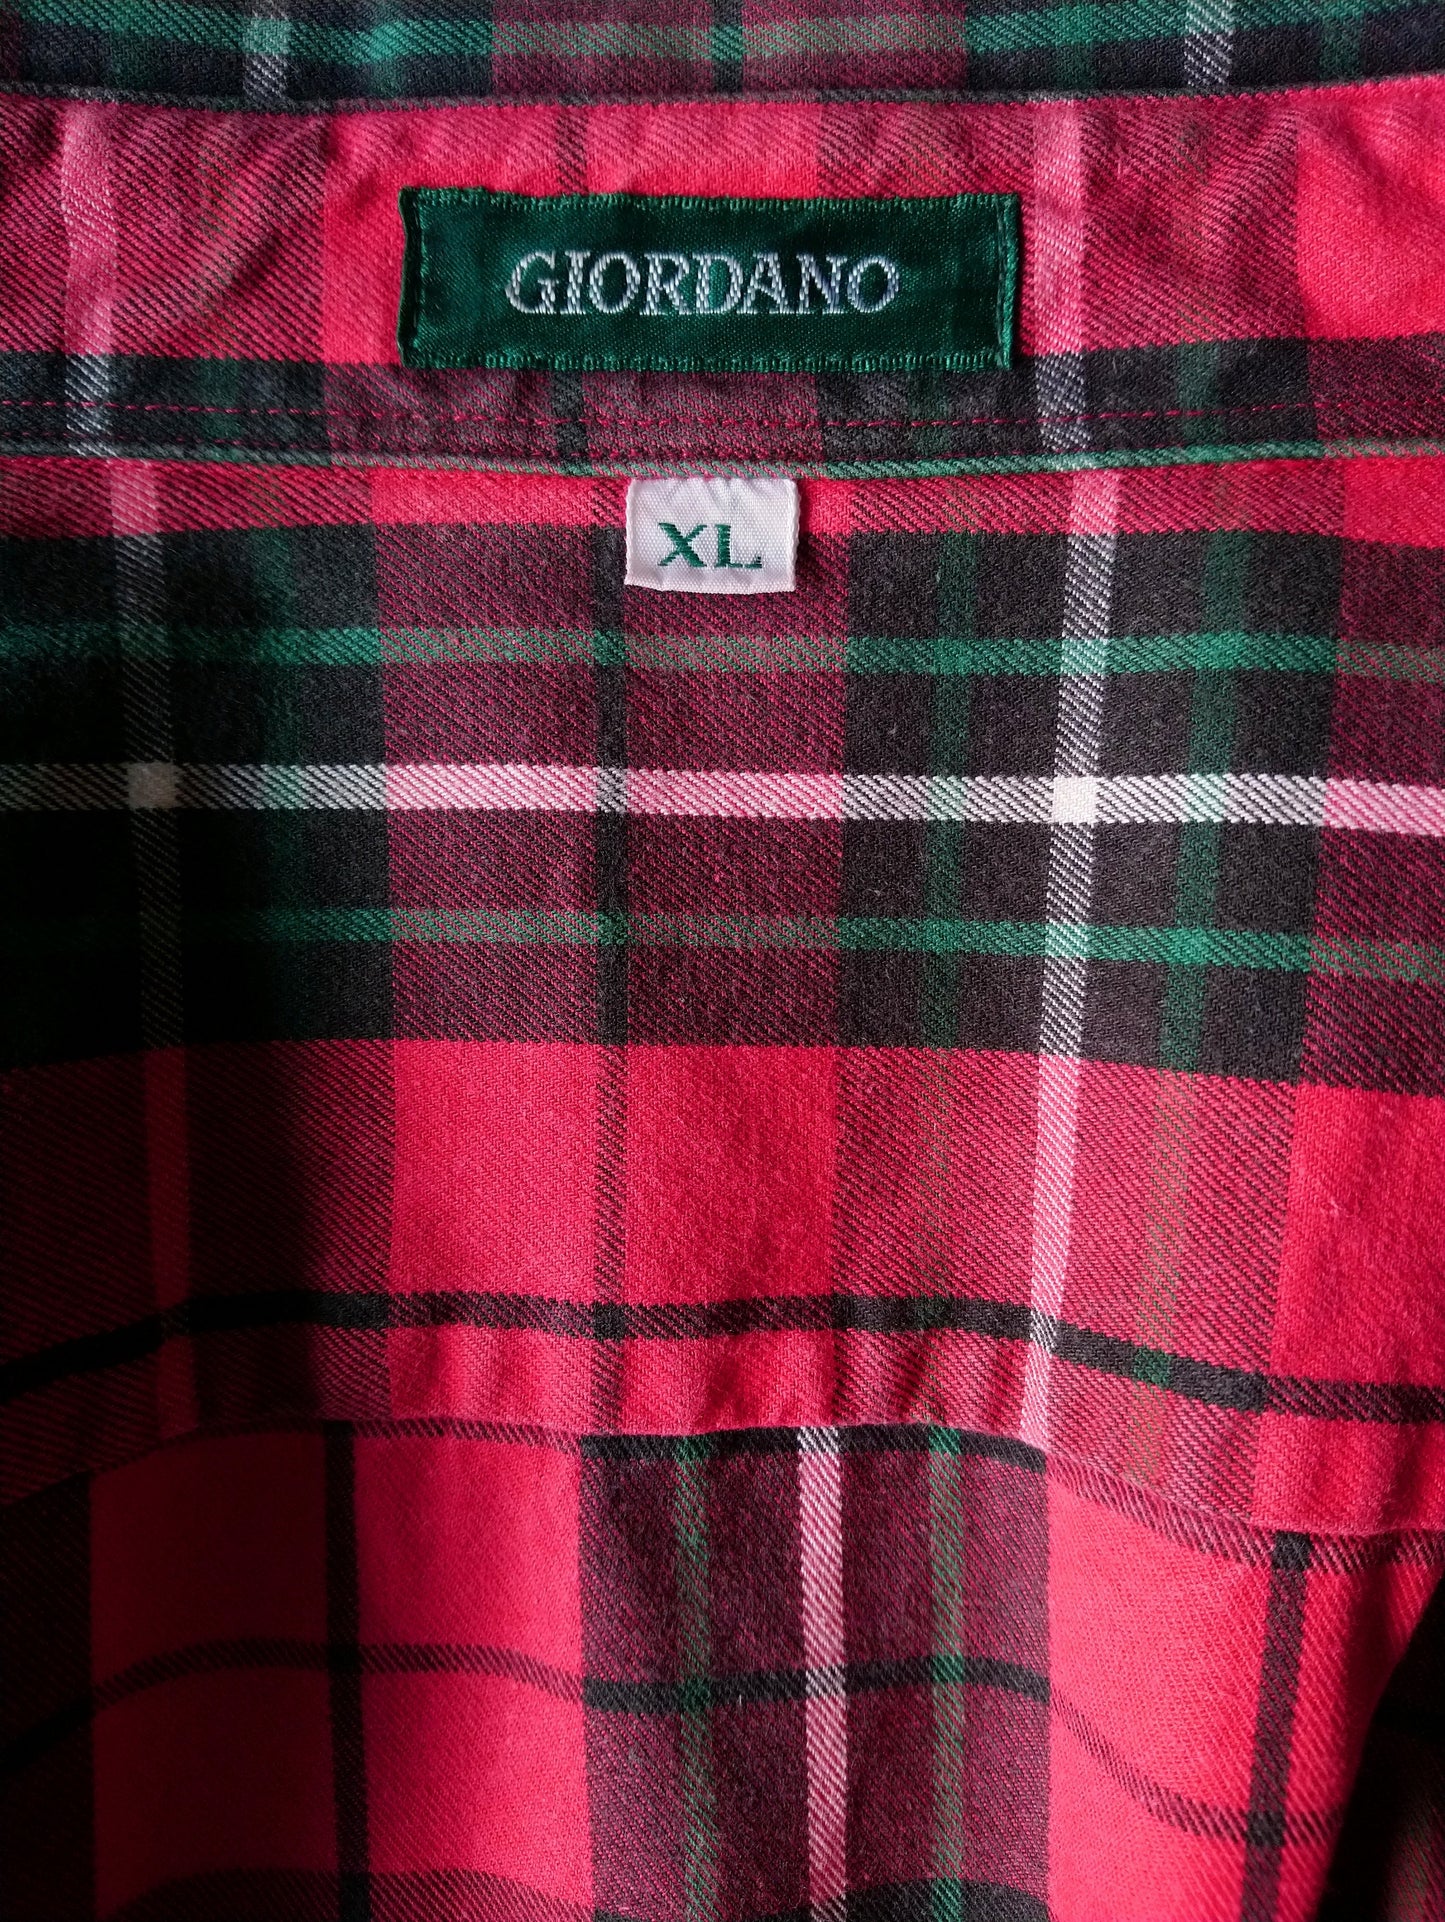 Camisa de Giordano vintage. Red Green a cuadros. Un poco de tela más gruesa. Tamaño xl.